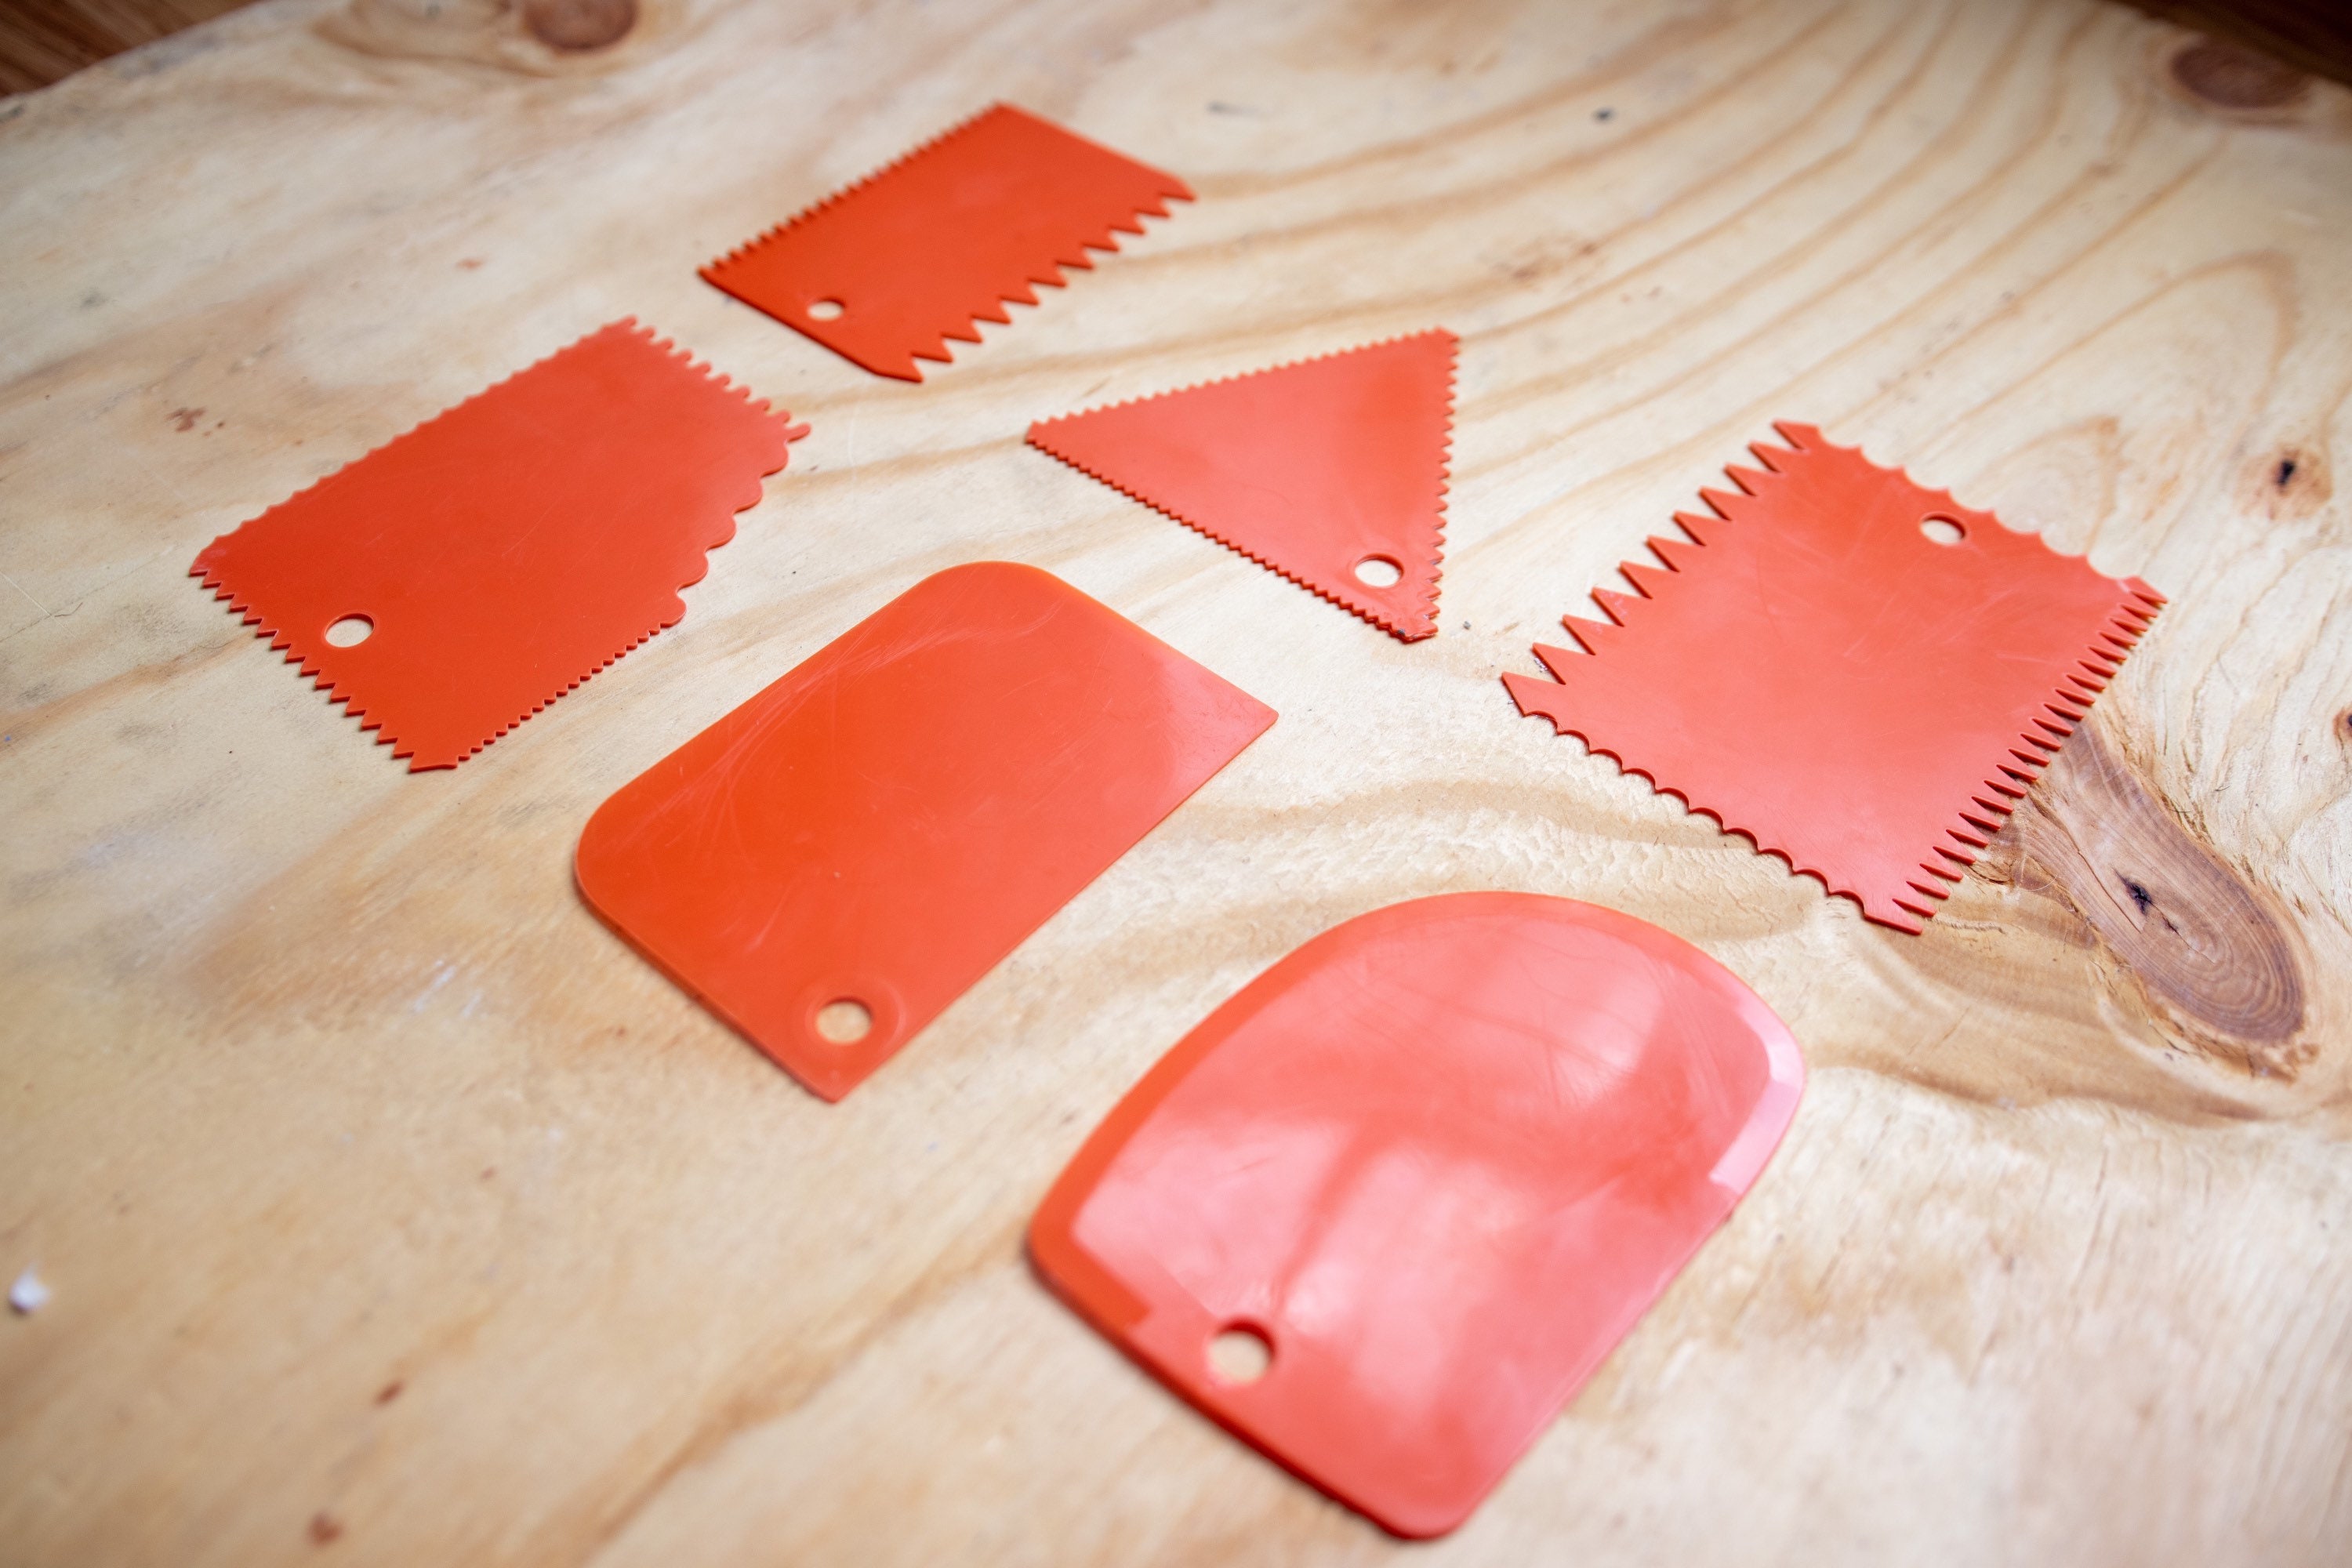 ON SALE Texture Tools Sculpting Tools Plaster Art Tools Plastic